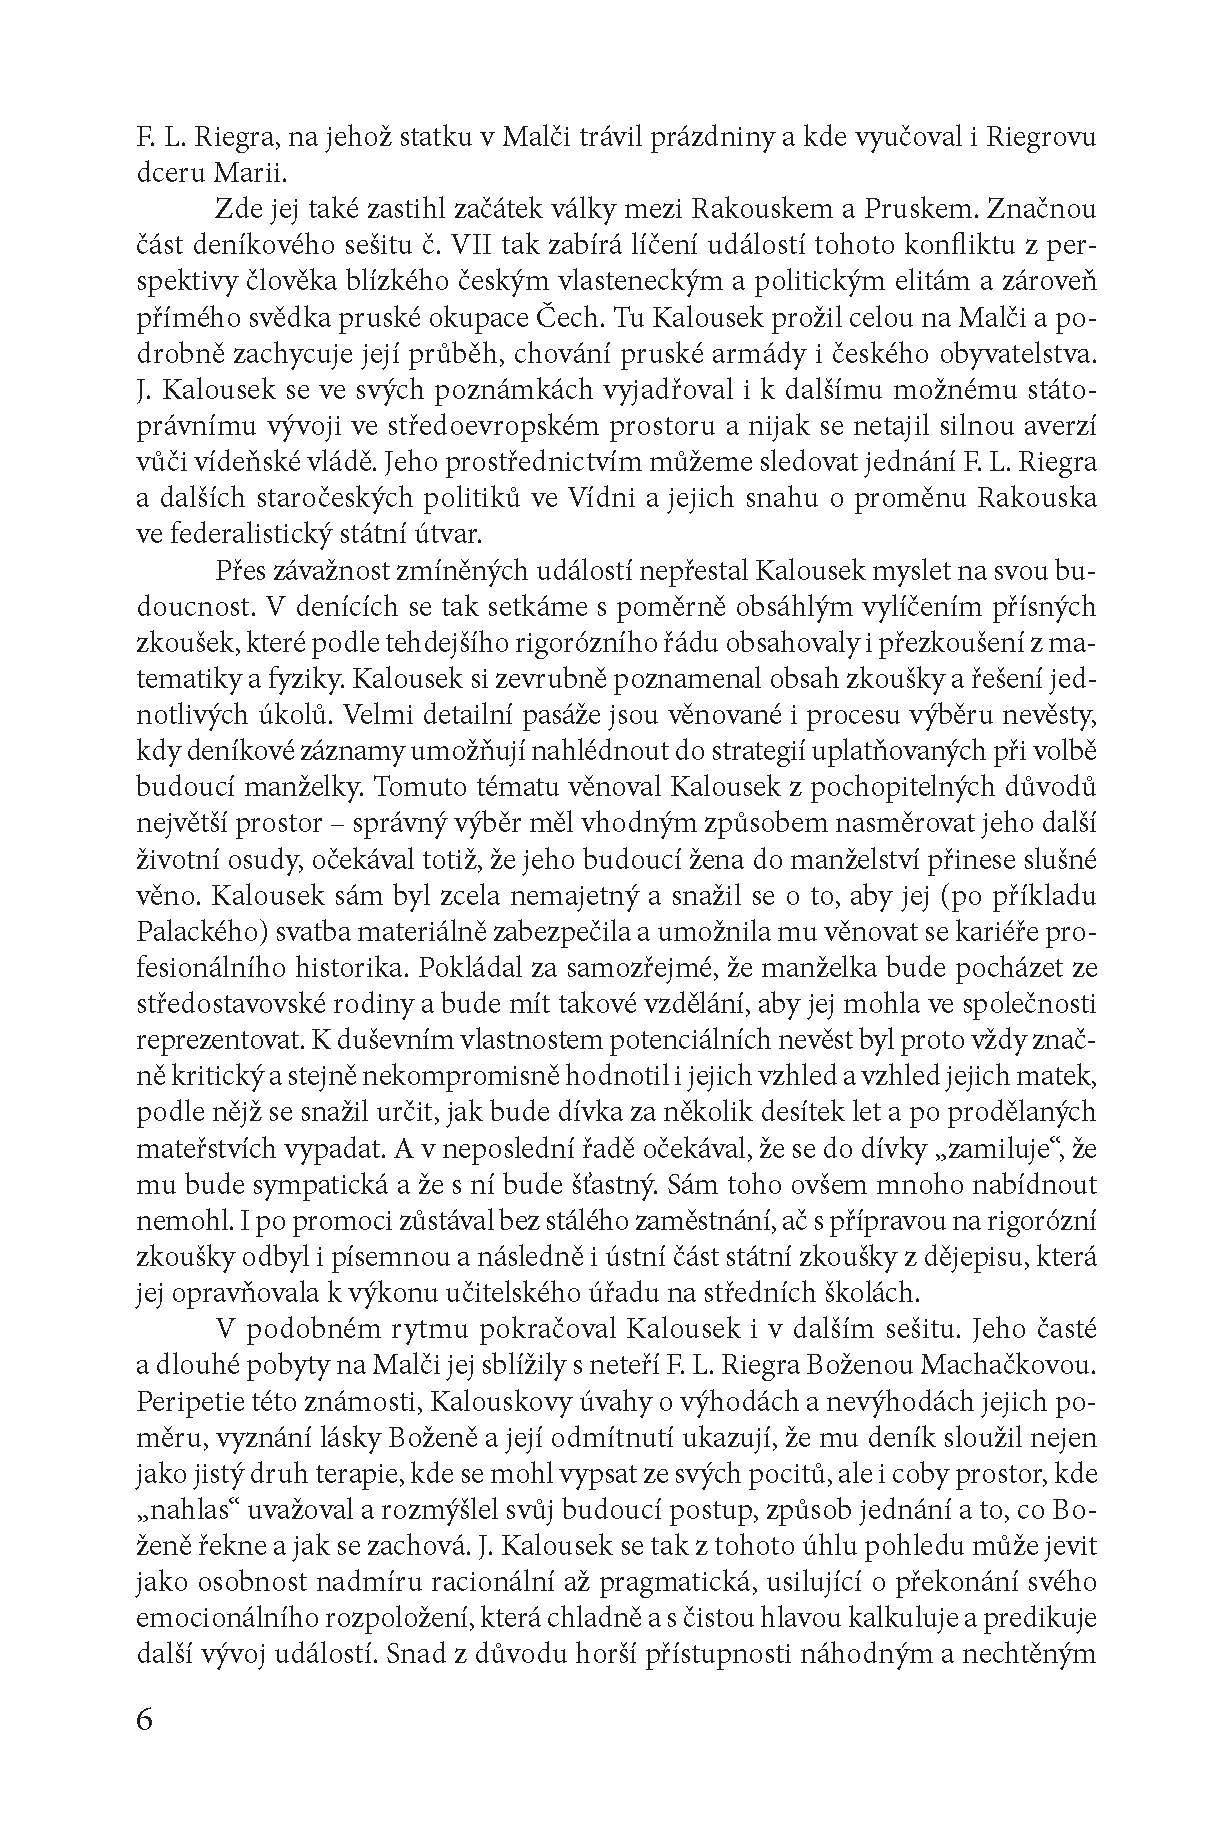 Deníky Josefa Kalouska II. ukázka-3